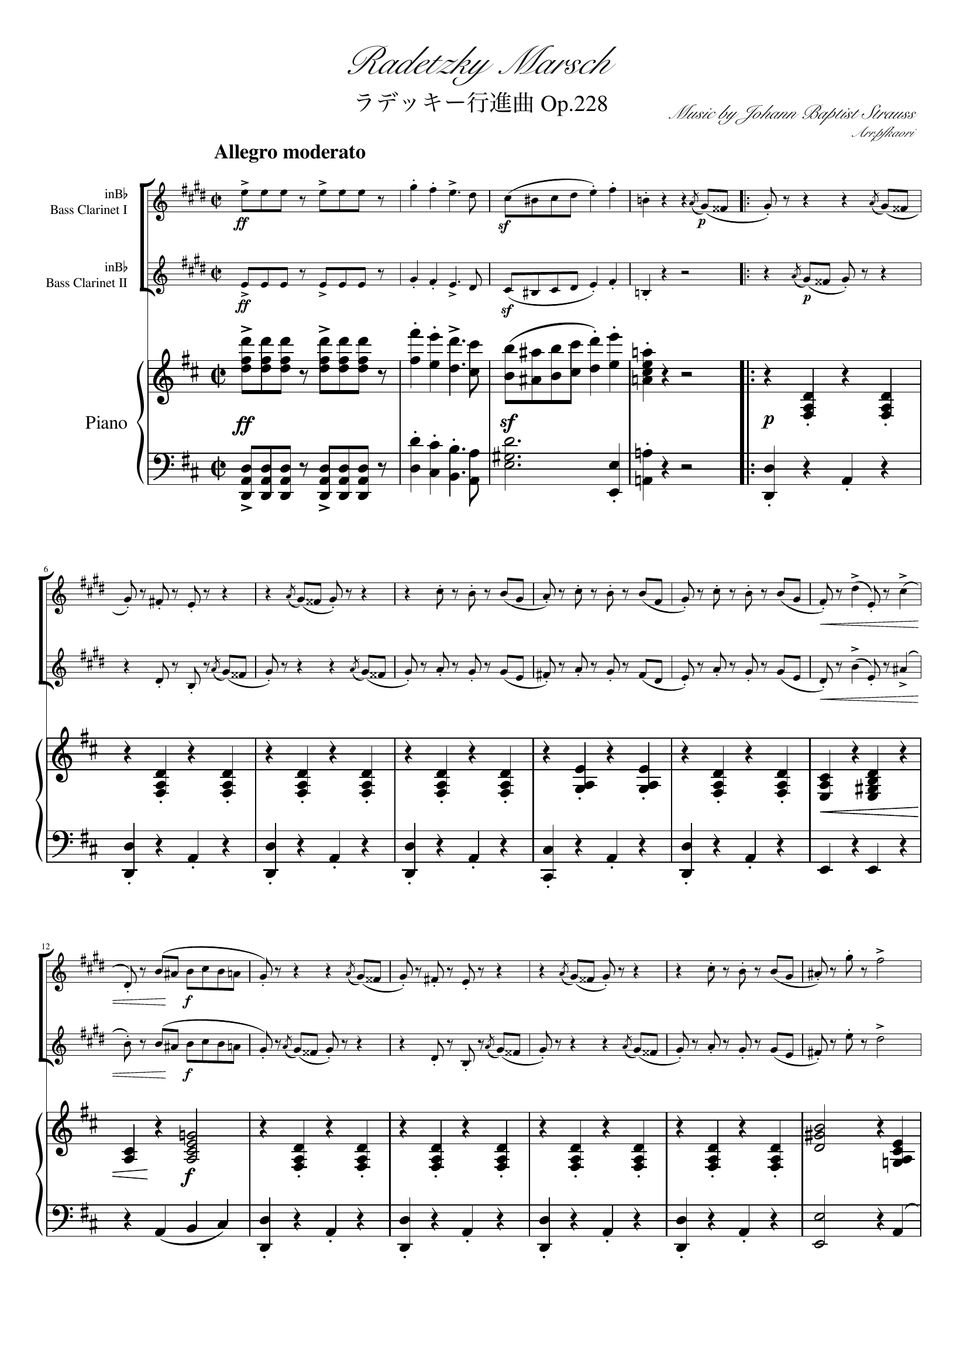 ヨハンシュトラウス1世 - ラデッキー行進曲 (D・ピアノトリオ/バスクラリネット二重奏) by pfkaori